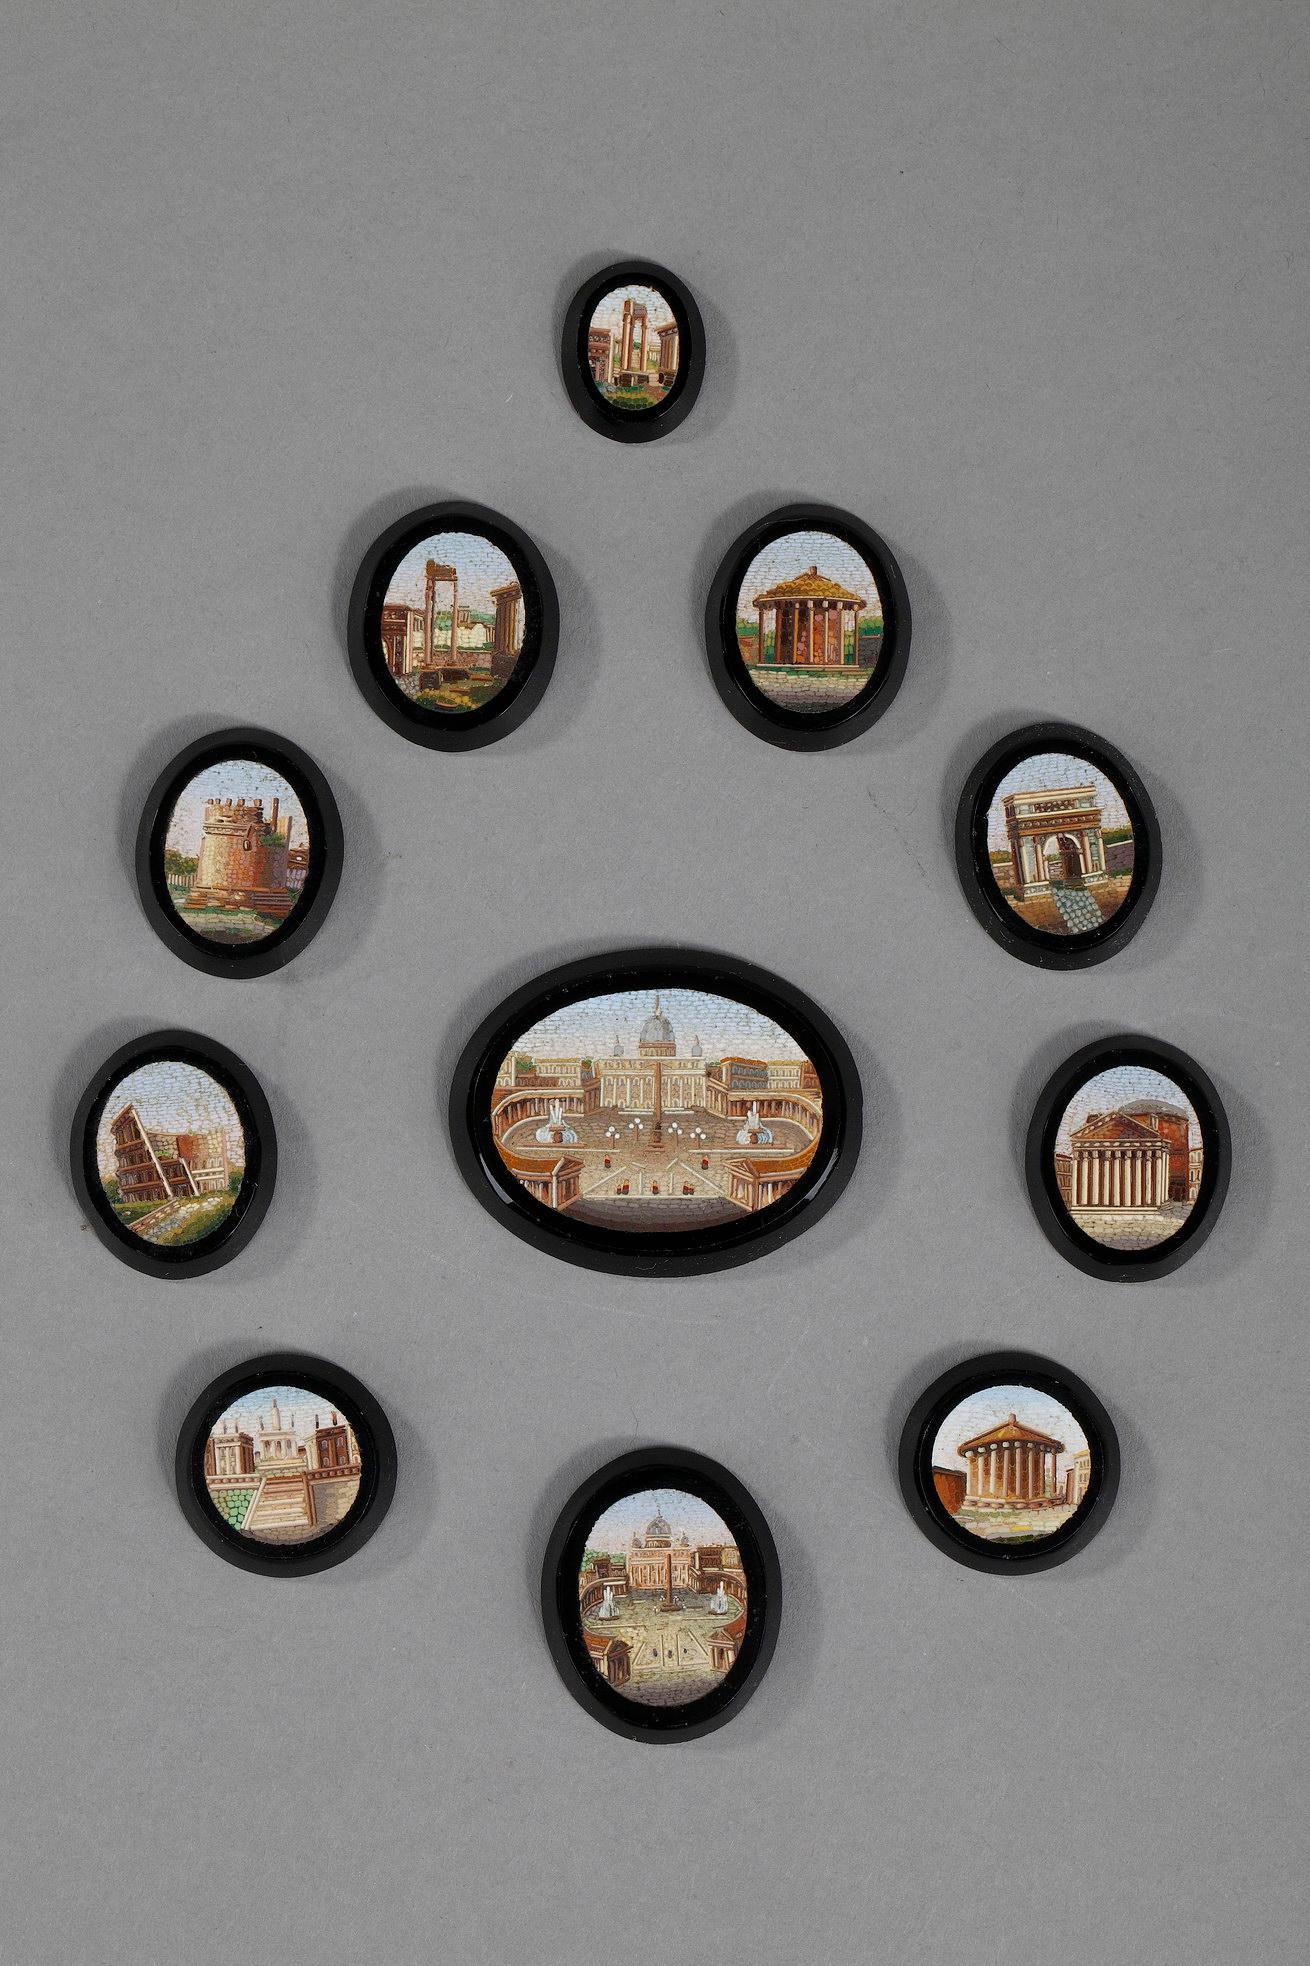 Ensemble de 11 micro-mosaïques Empire sur pierre noire, de forme ronde, ovale ou en goutte d'eau. Ils représentent des édifices romains, tels que le Panthéon, le temple de Vesta ou Saint-Pierre. 

Dim du plus grand : 4,4cm x 3,5cm x 0,4cm
Dim du